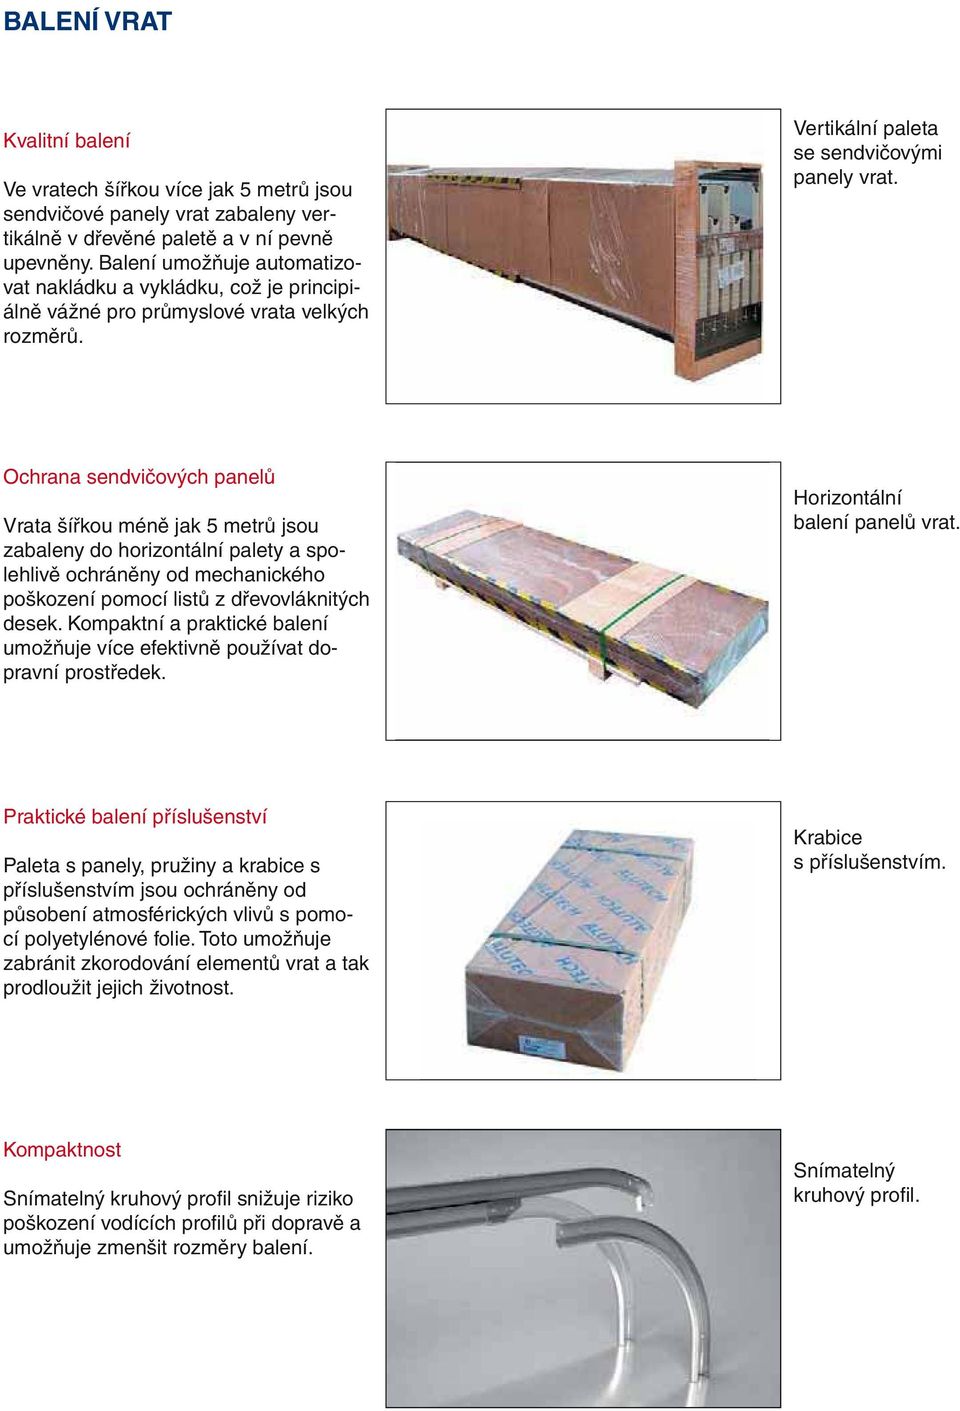 Ochrana sendvičových panelů Vrata šířkou méně jak 5 metrů jsou zabaleny do horizontální palety a spolehlivě ochráněny od mechanického poškození pomocí listů z dřevovláknitých desek.